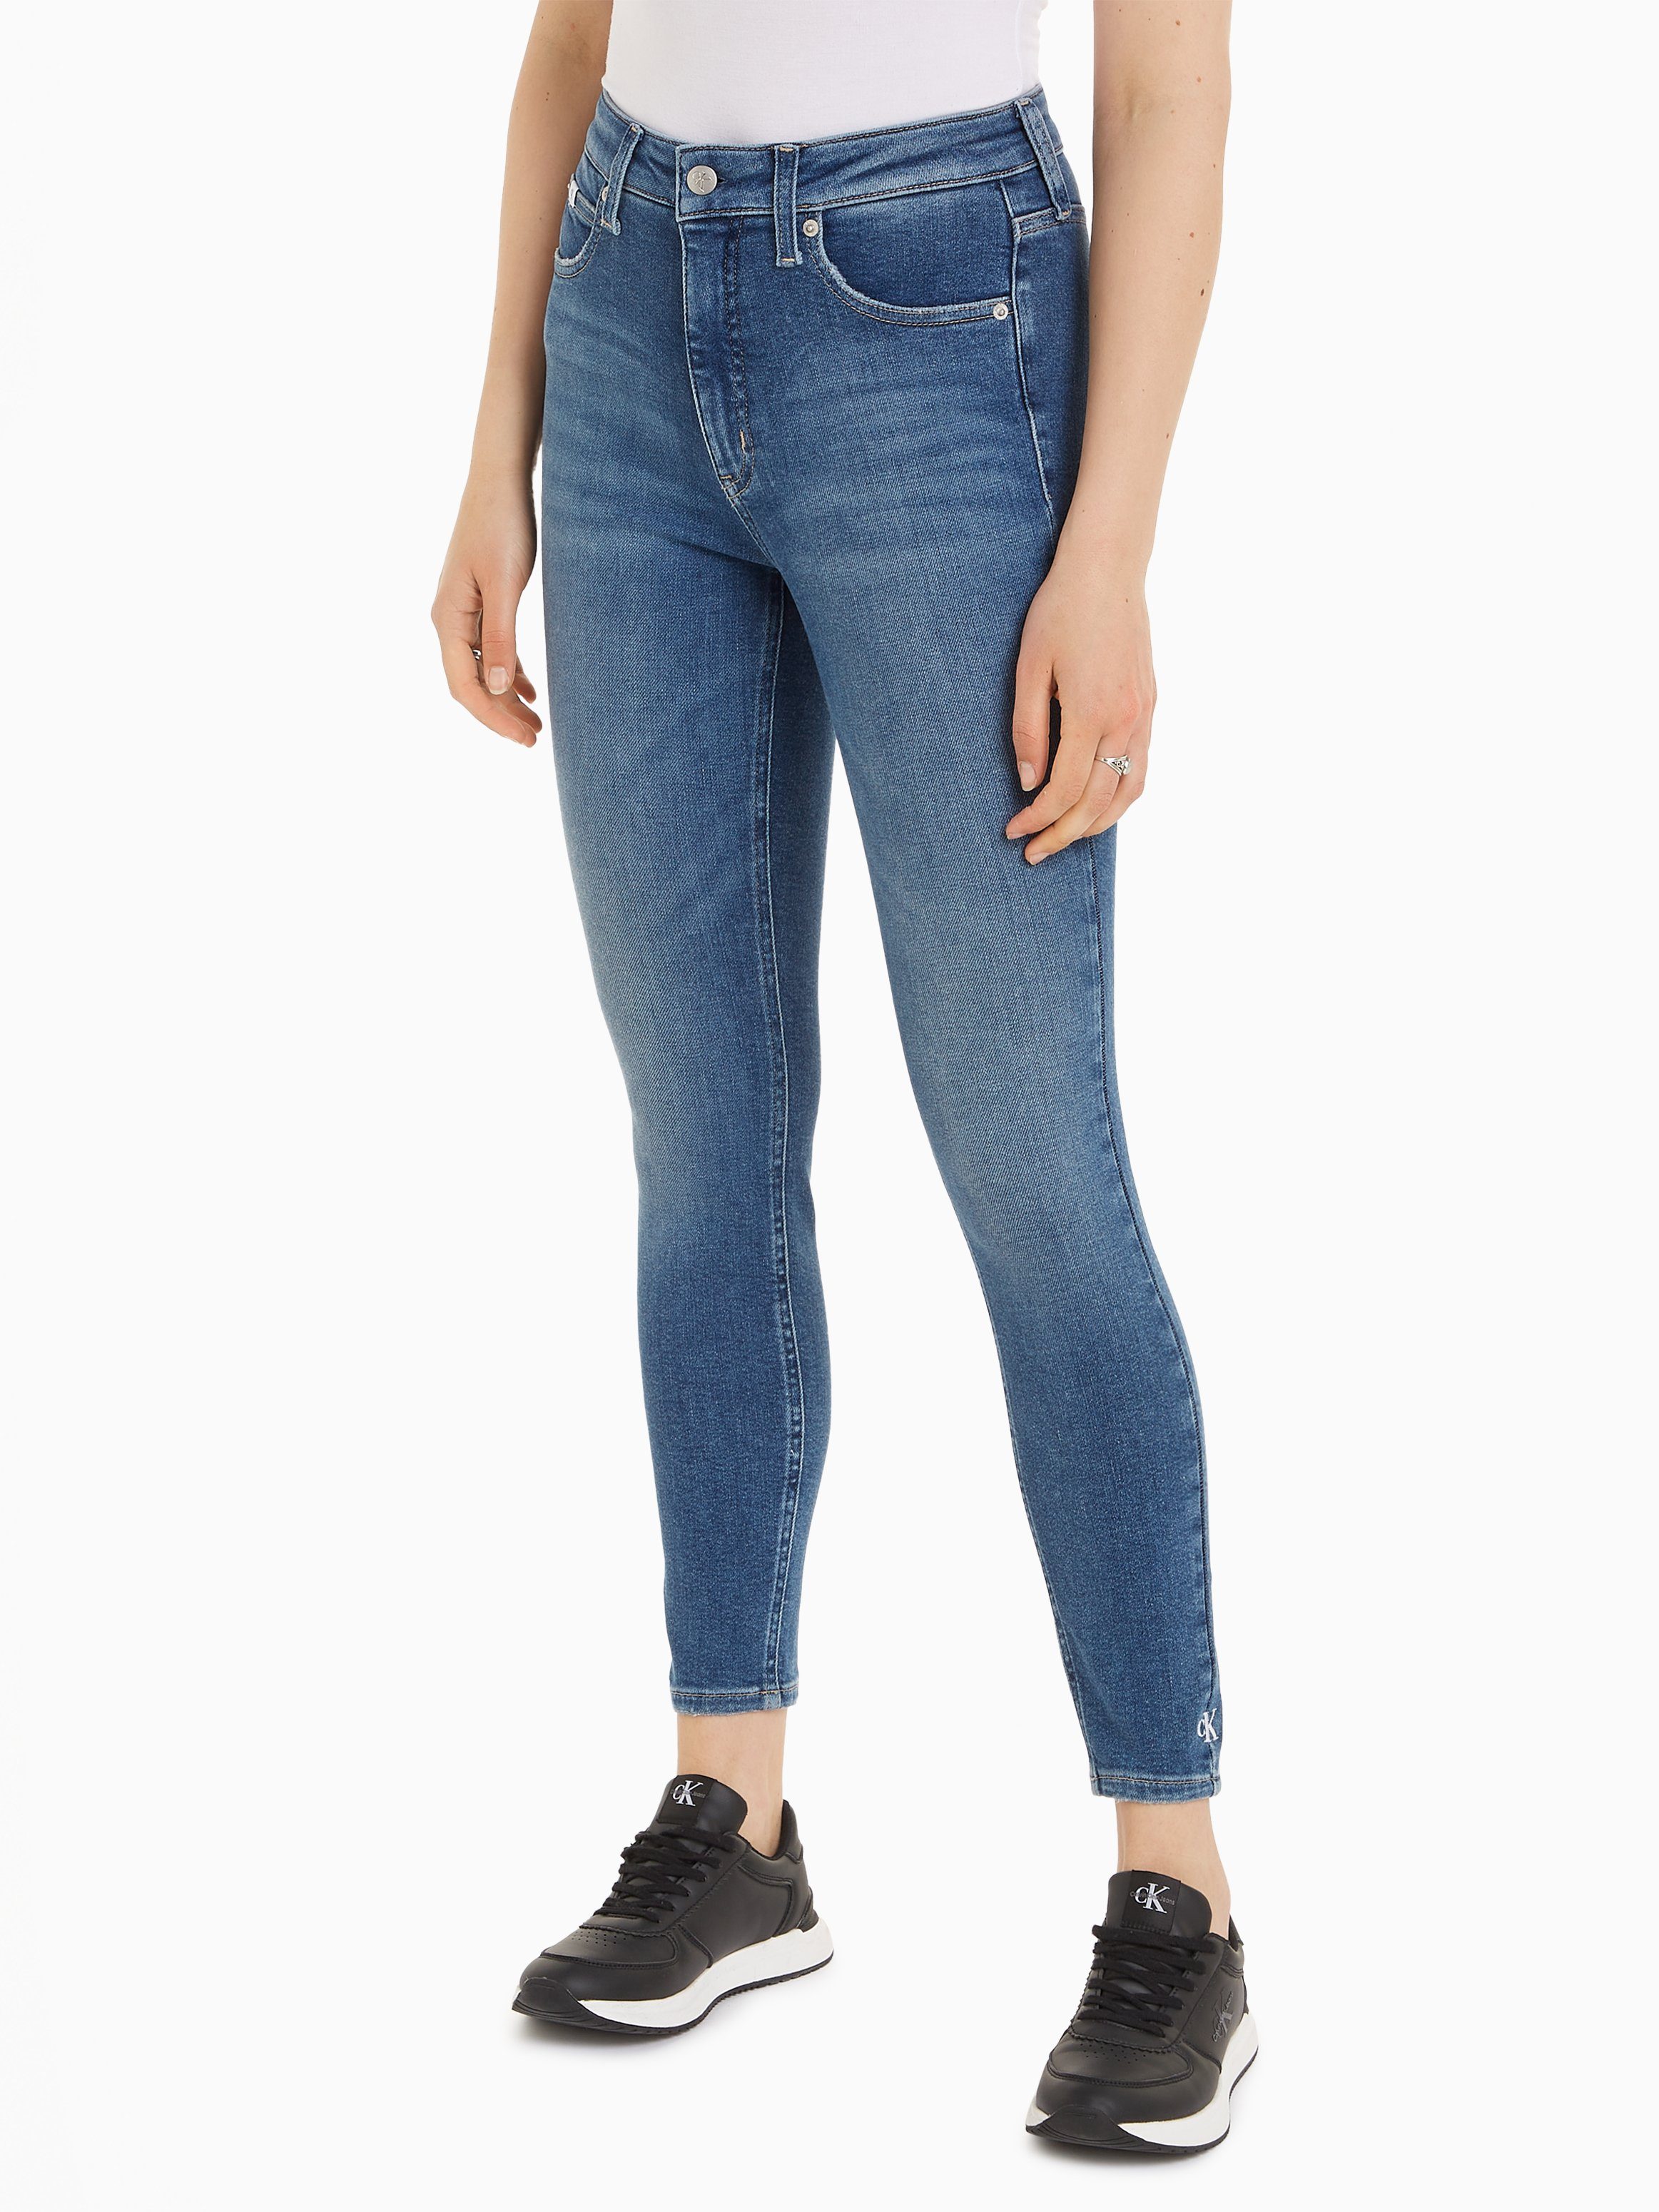 Ankle-Jeans hoher Bund für Damen kaufen » high Waist Ankle-Jeans